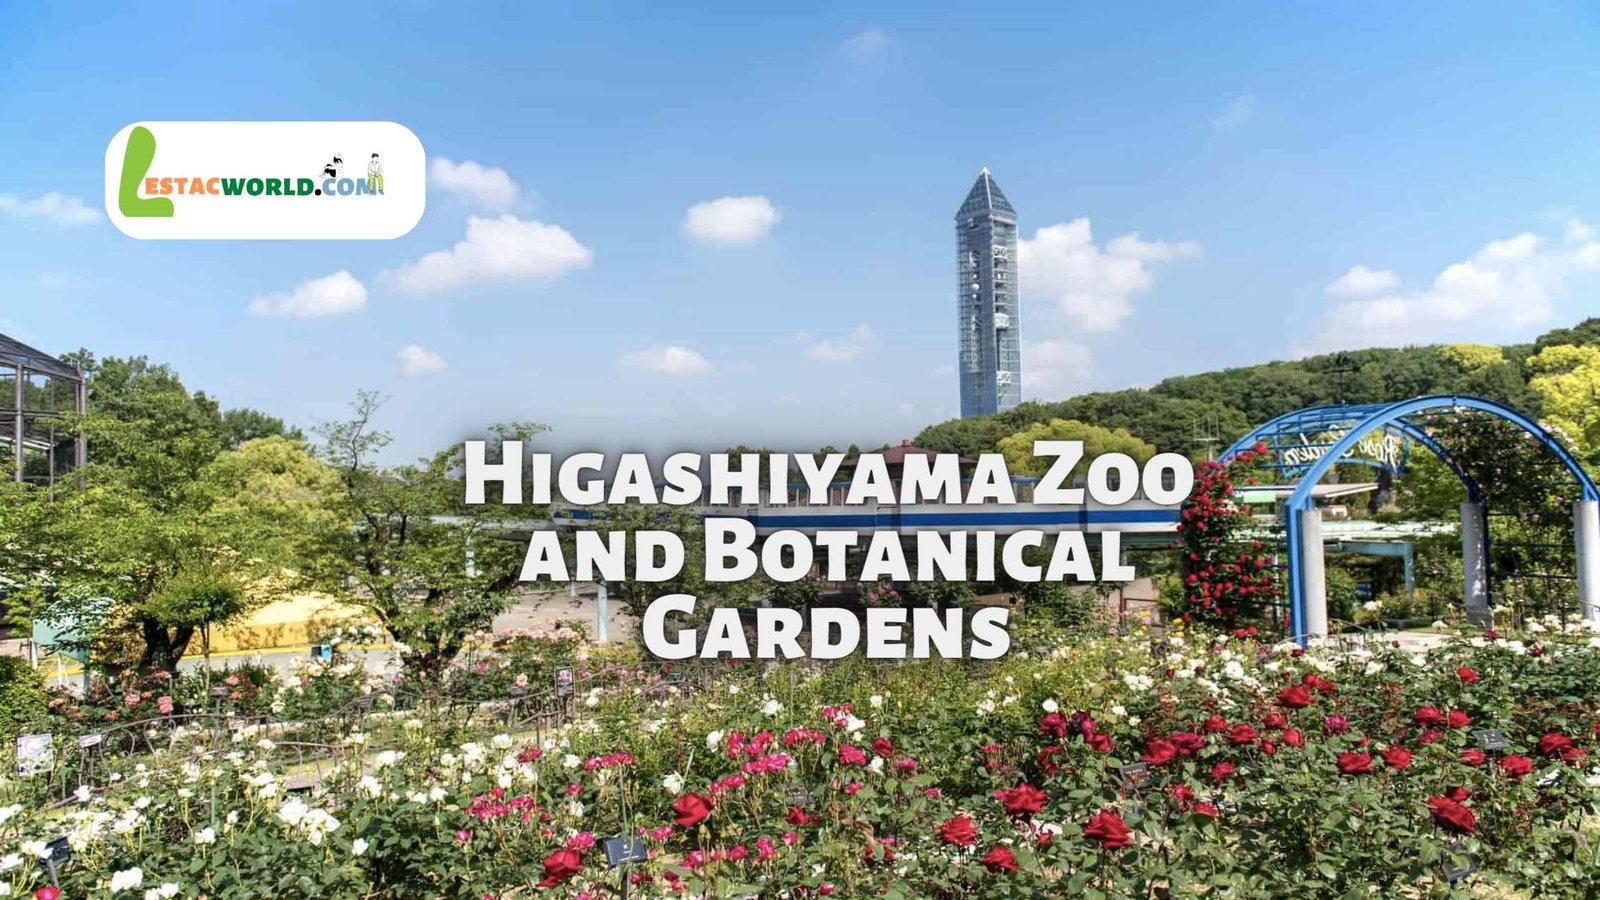 About Higashiyama Zoo and Botanical Gardens